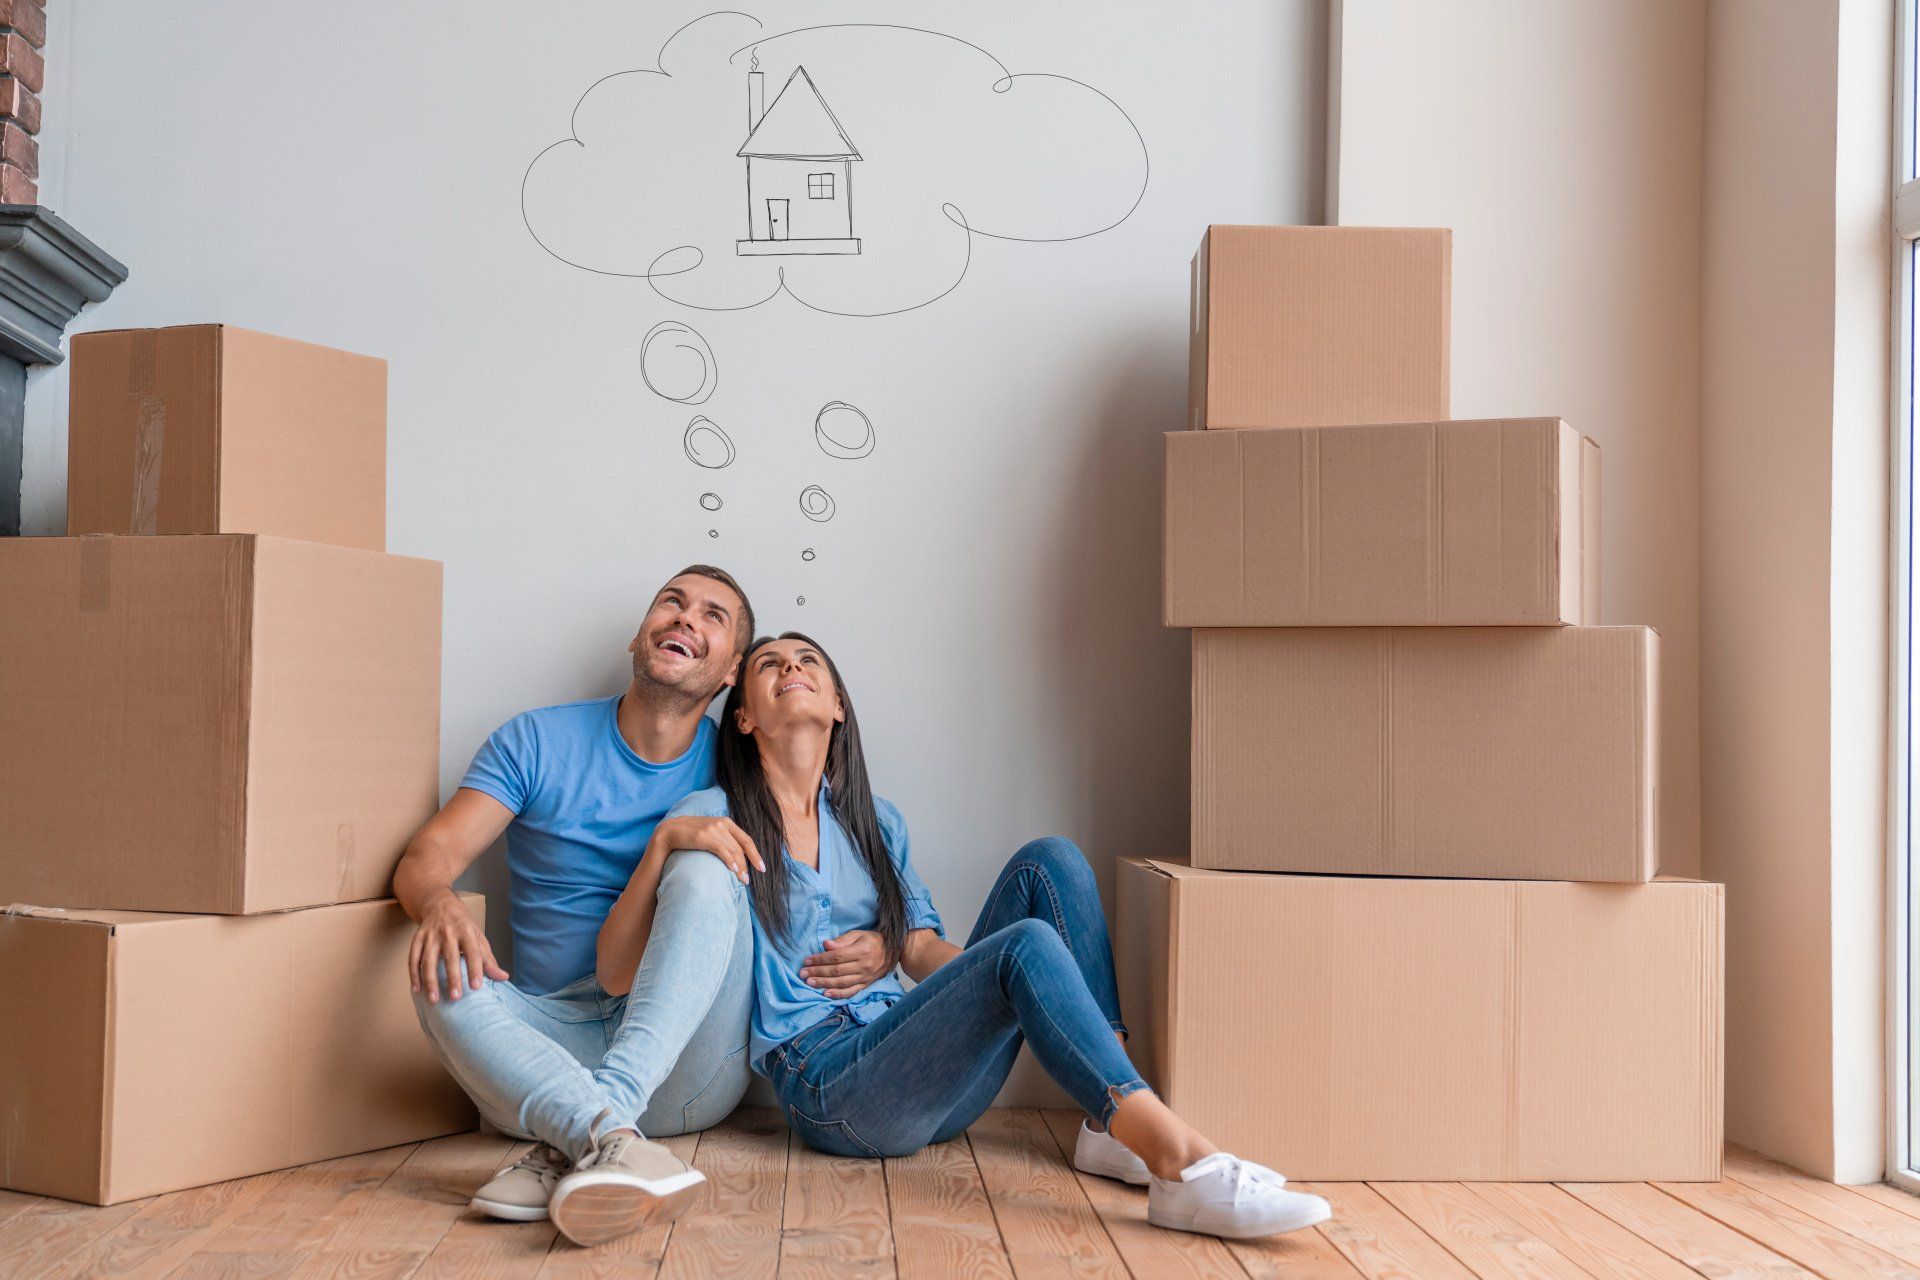 Couple souriant entouré de cartons lève la tête vers un dessin de maison dans une bulle de pensée